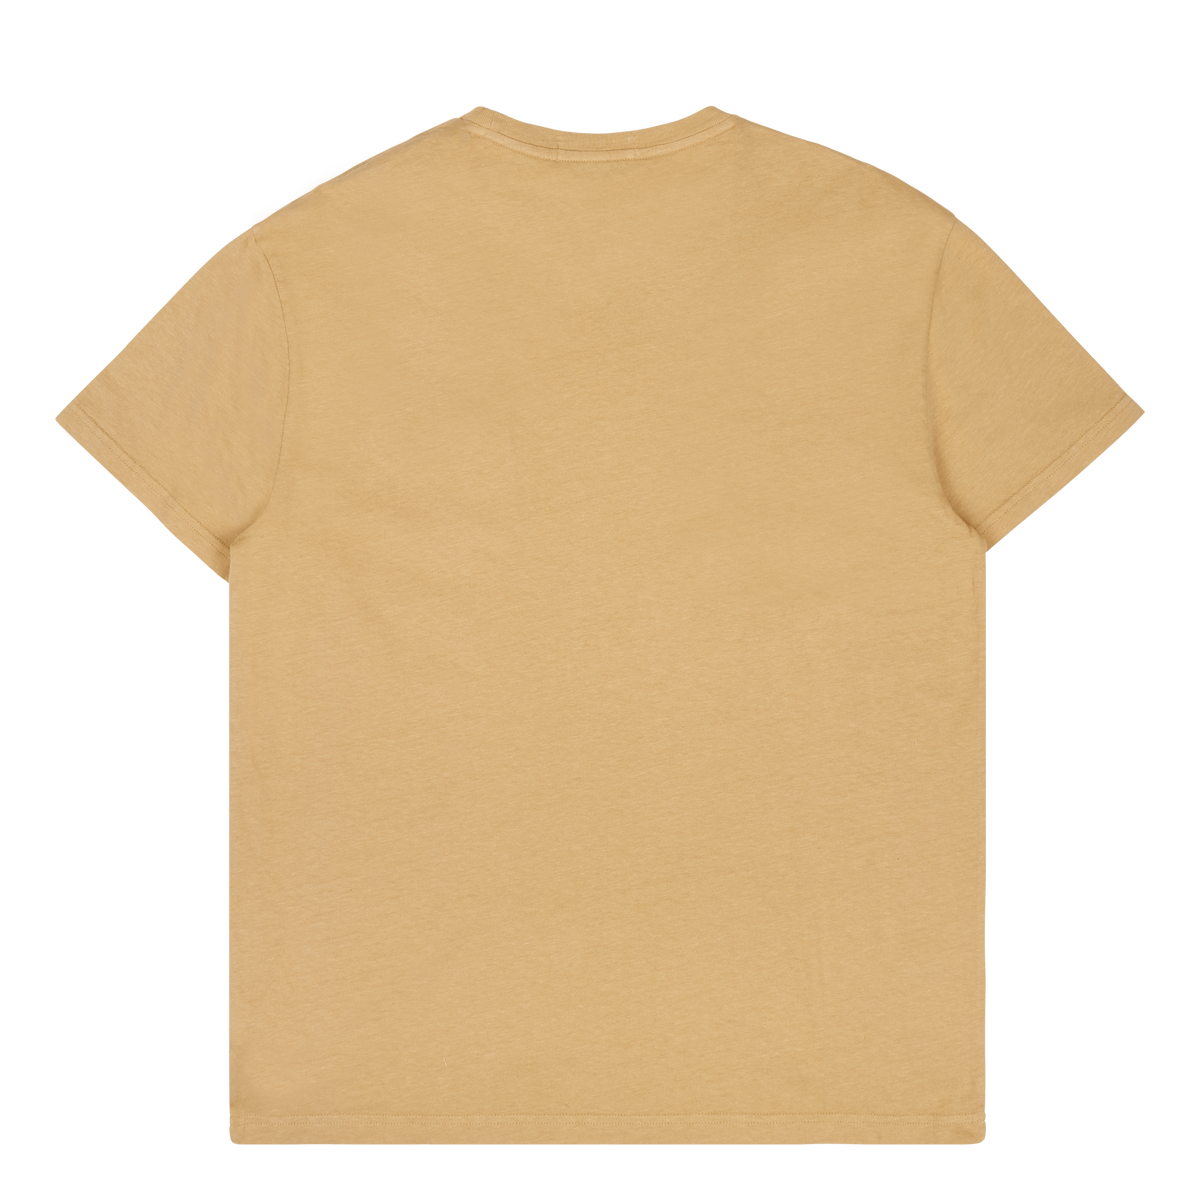 Polo Ralph Lauren Cotton Linen T-shirt Vintage Khaki